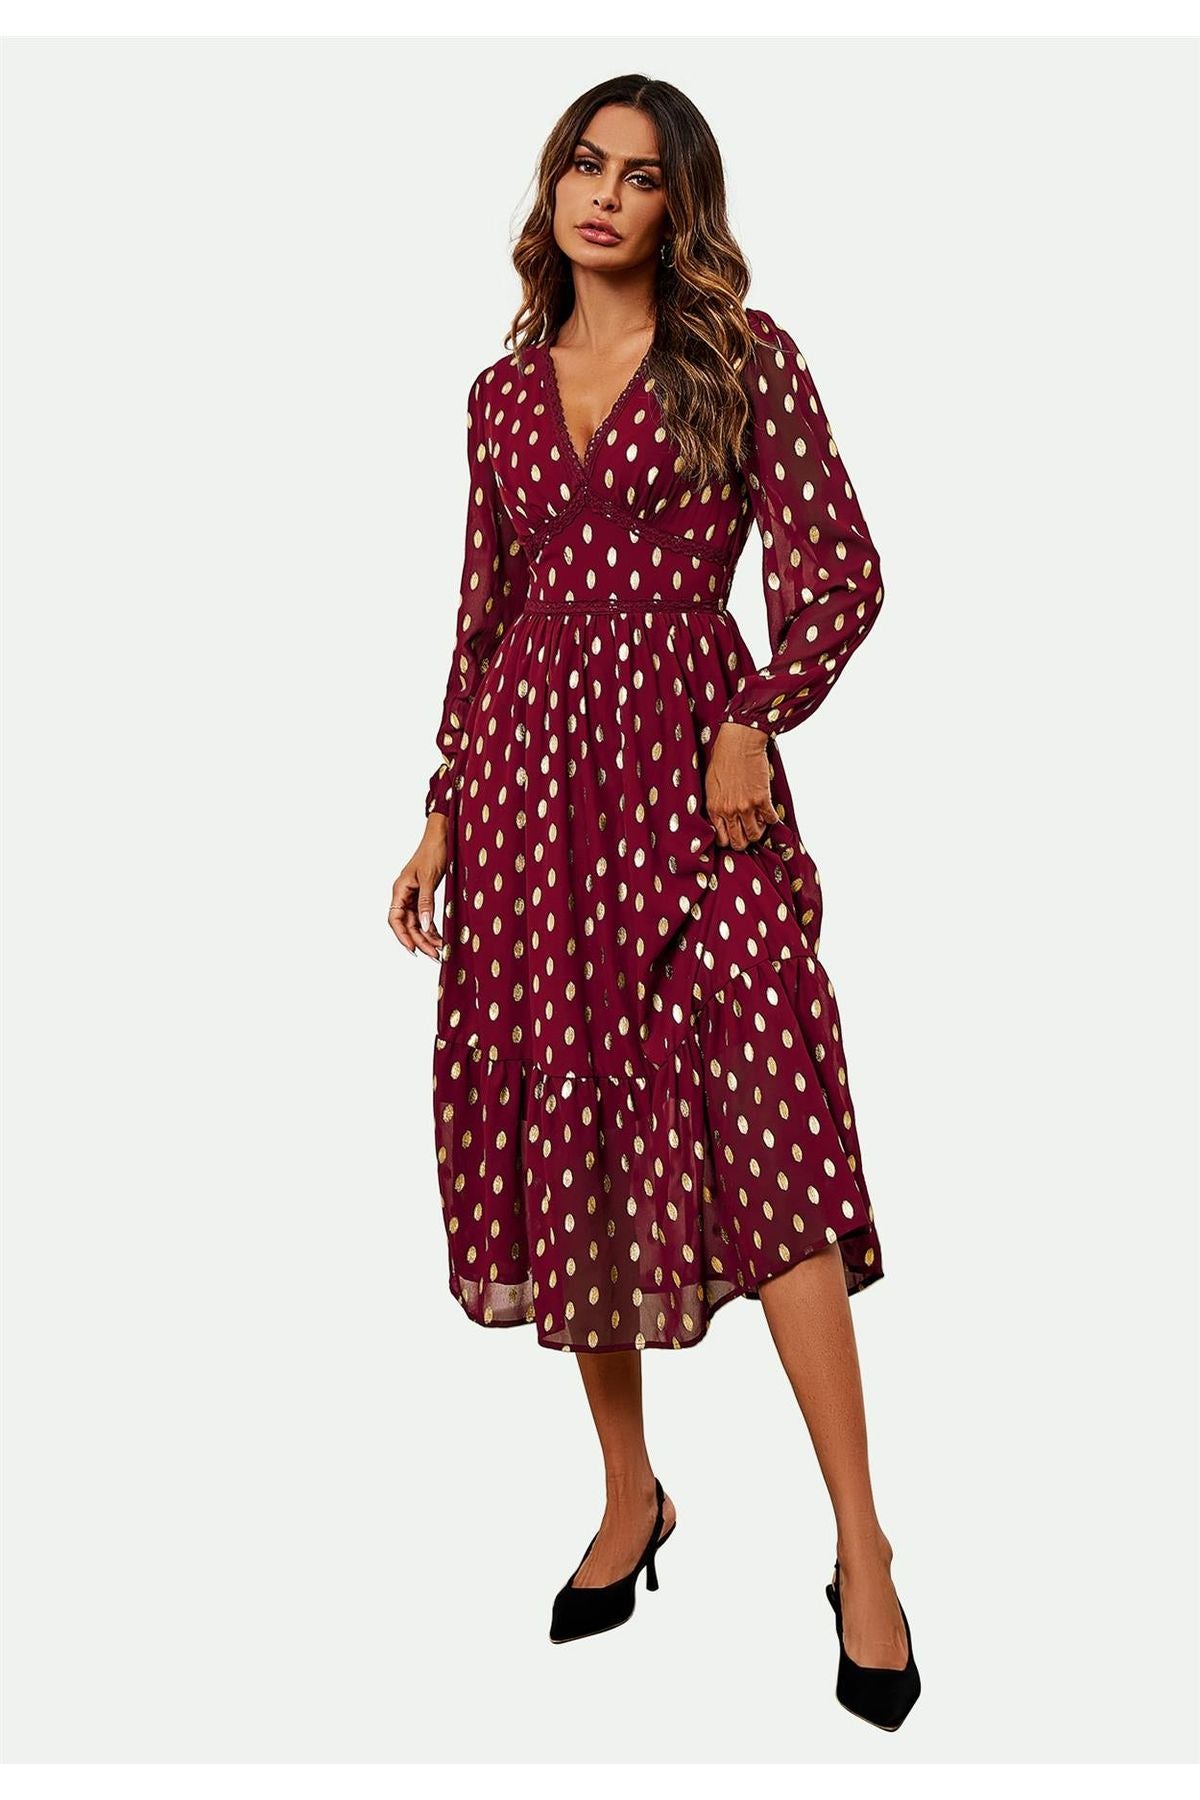 Lace Trim Foil Long Sleeve Maxi Dress In Wine FS565-WG